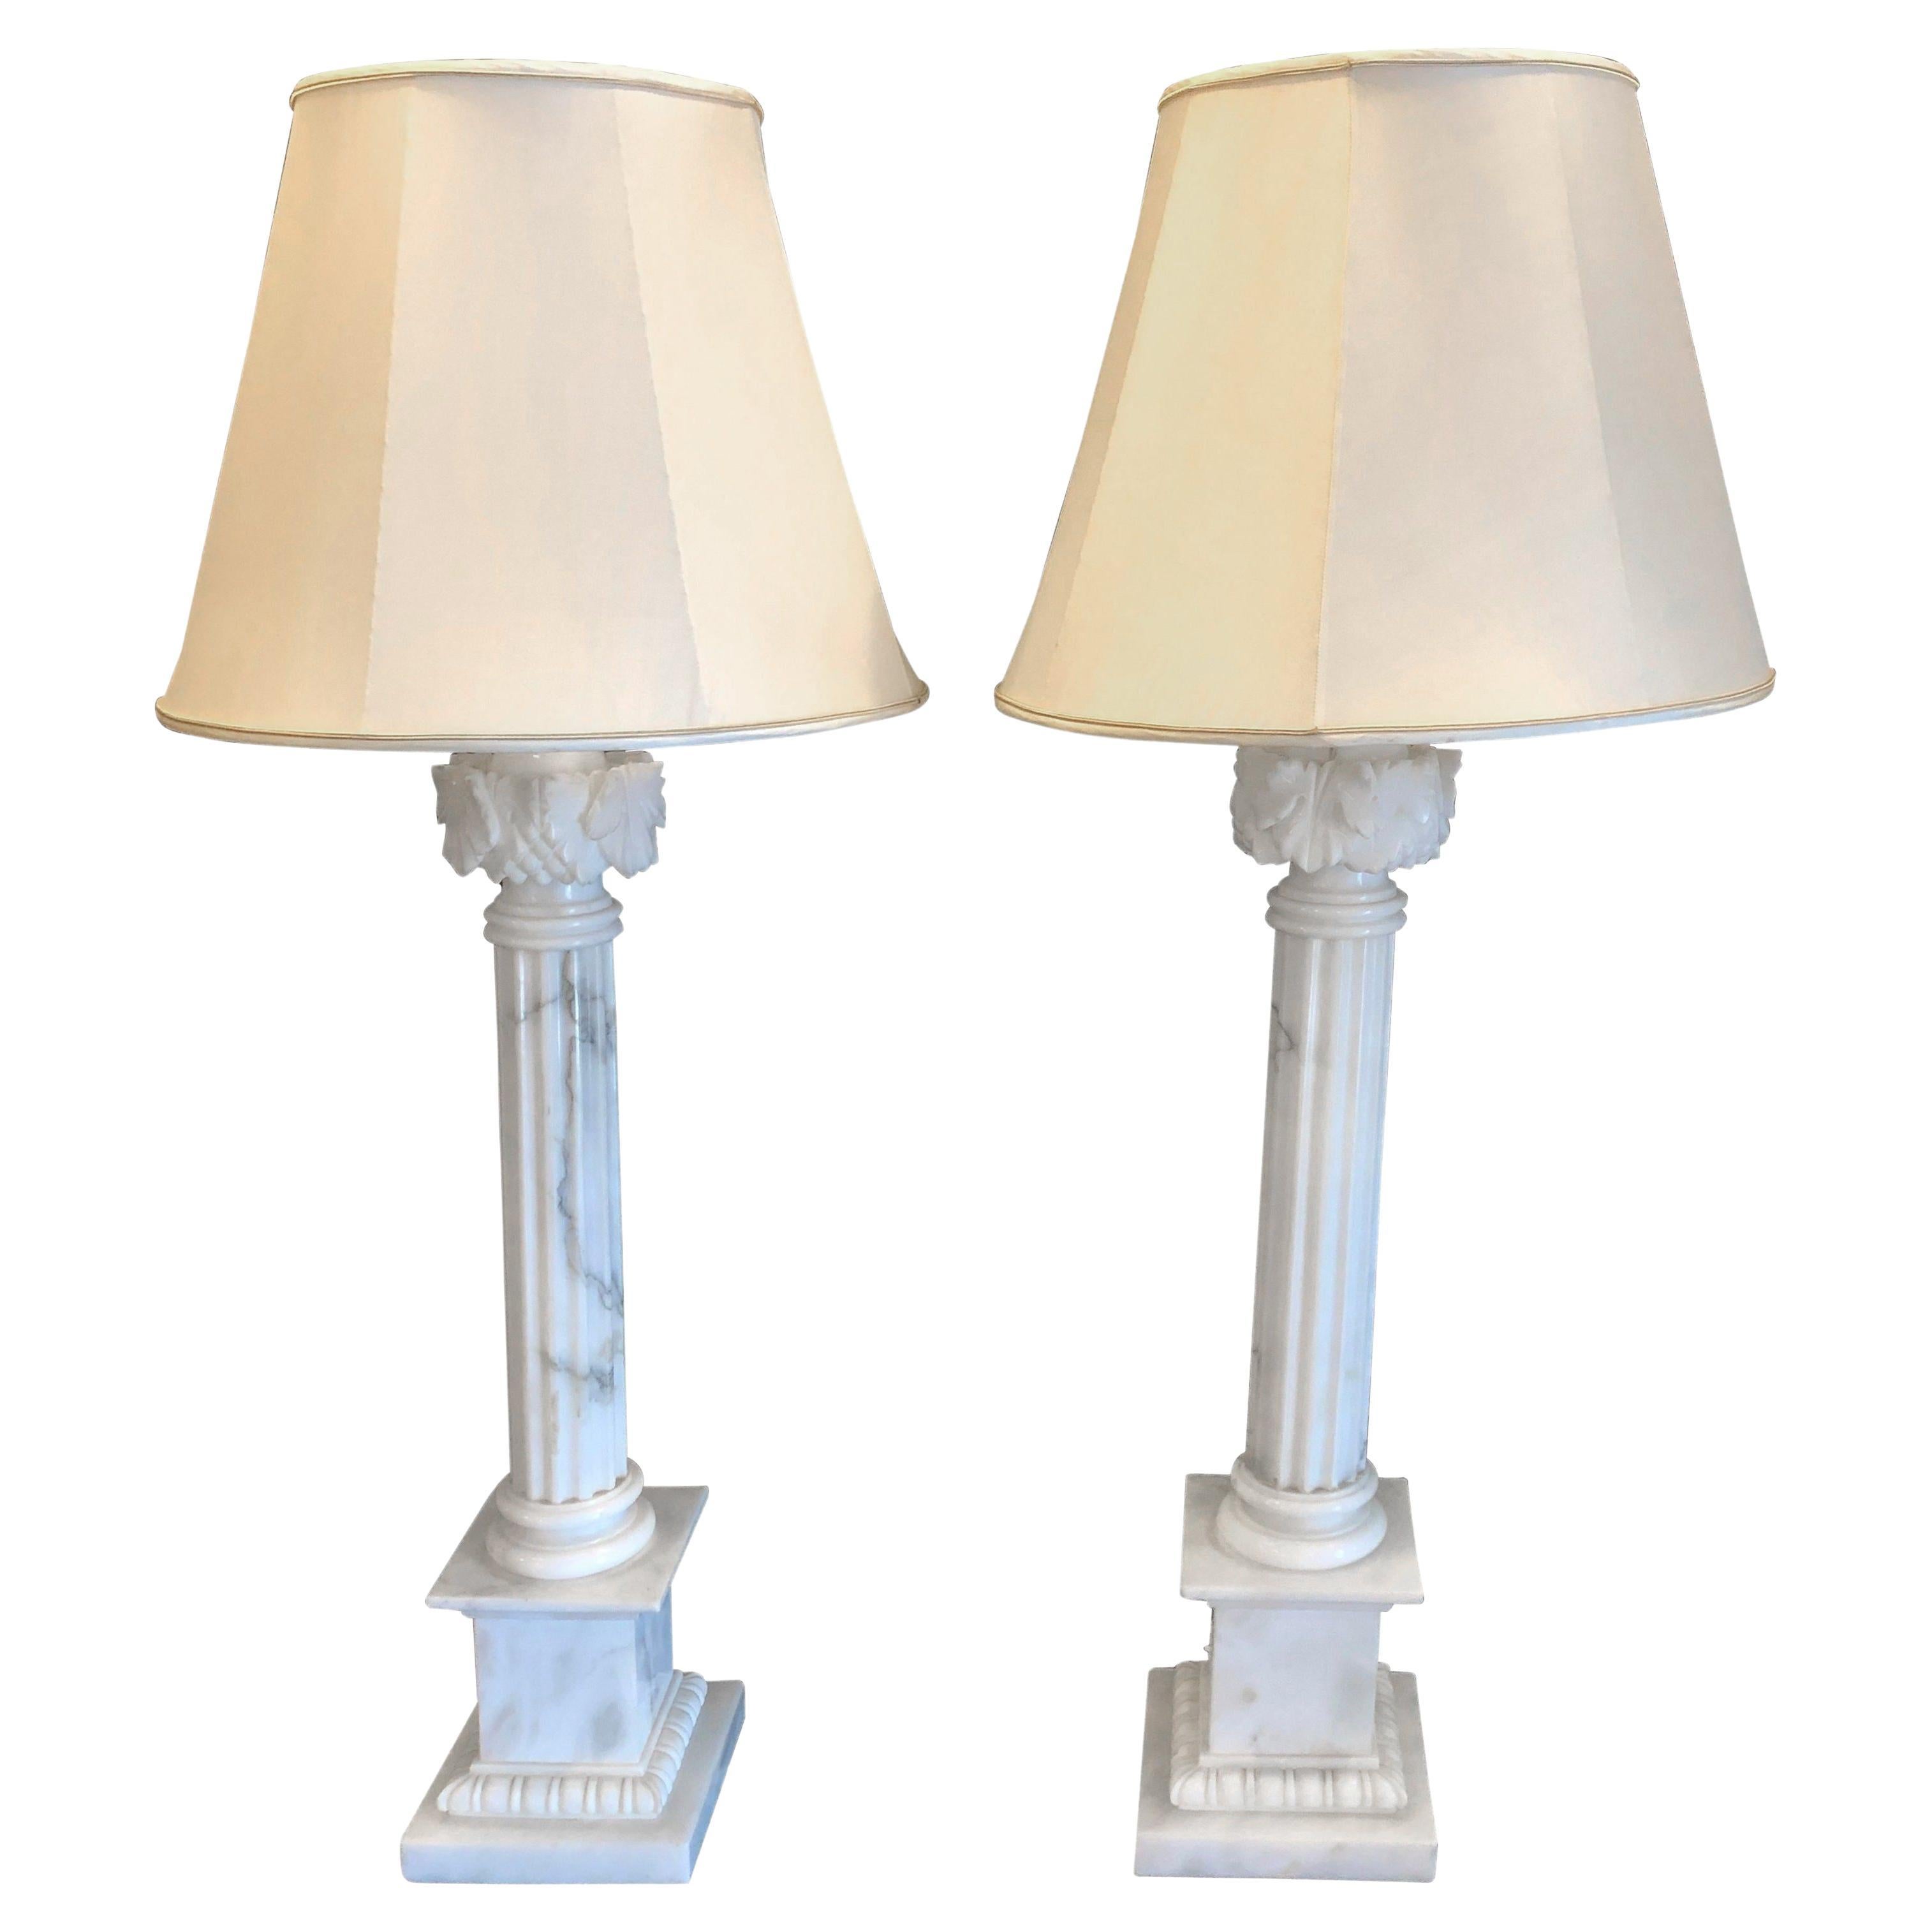 Paar weiße und grau geäderte Säulen-Marmor-Tischlampen mit maßgefertigten Schirmen